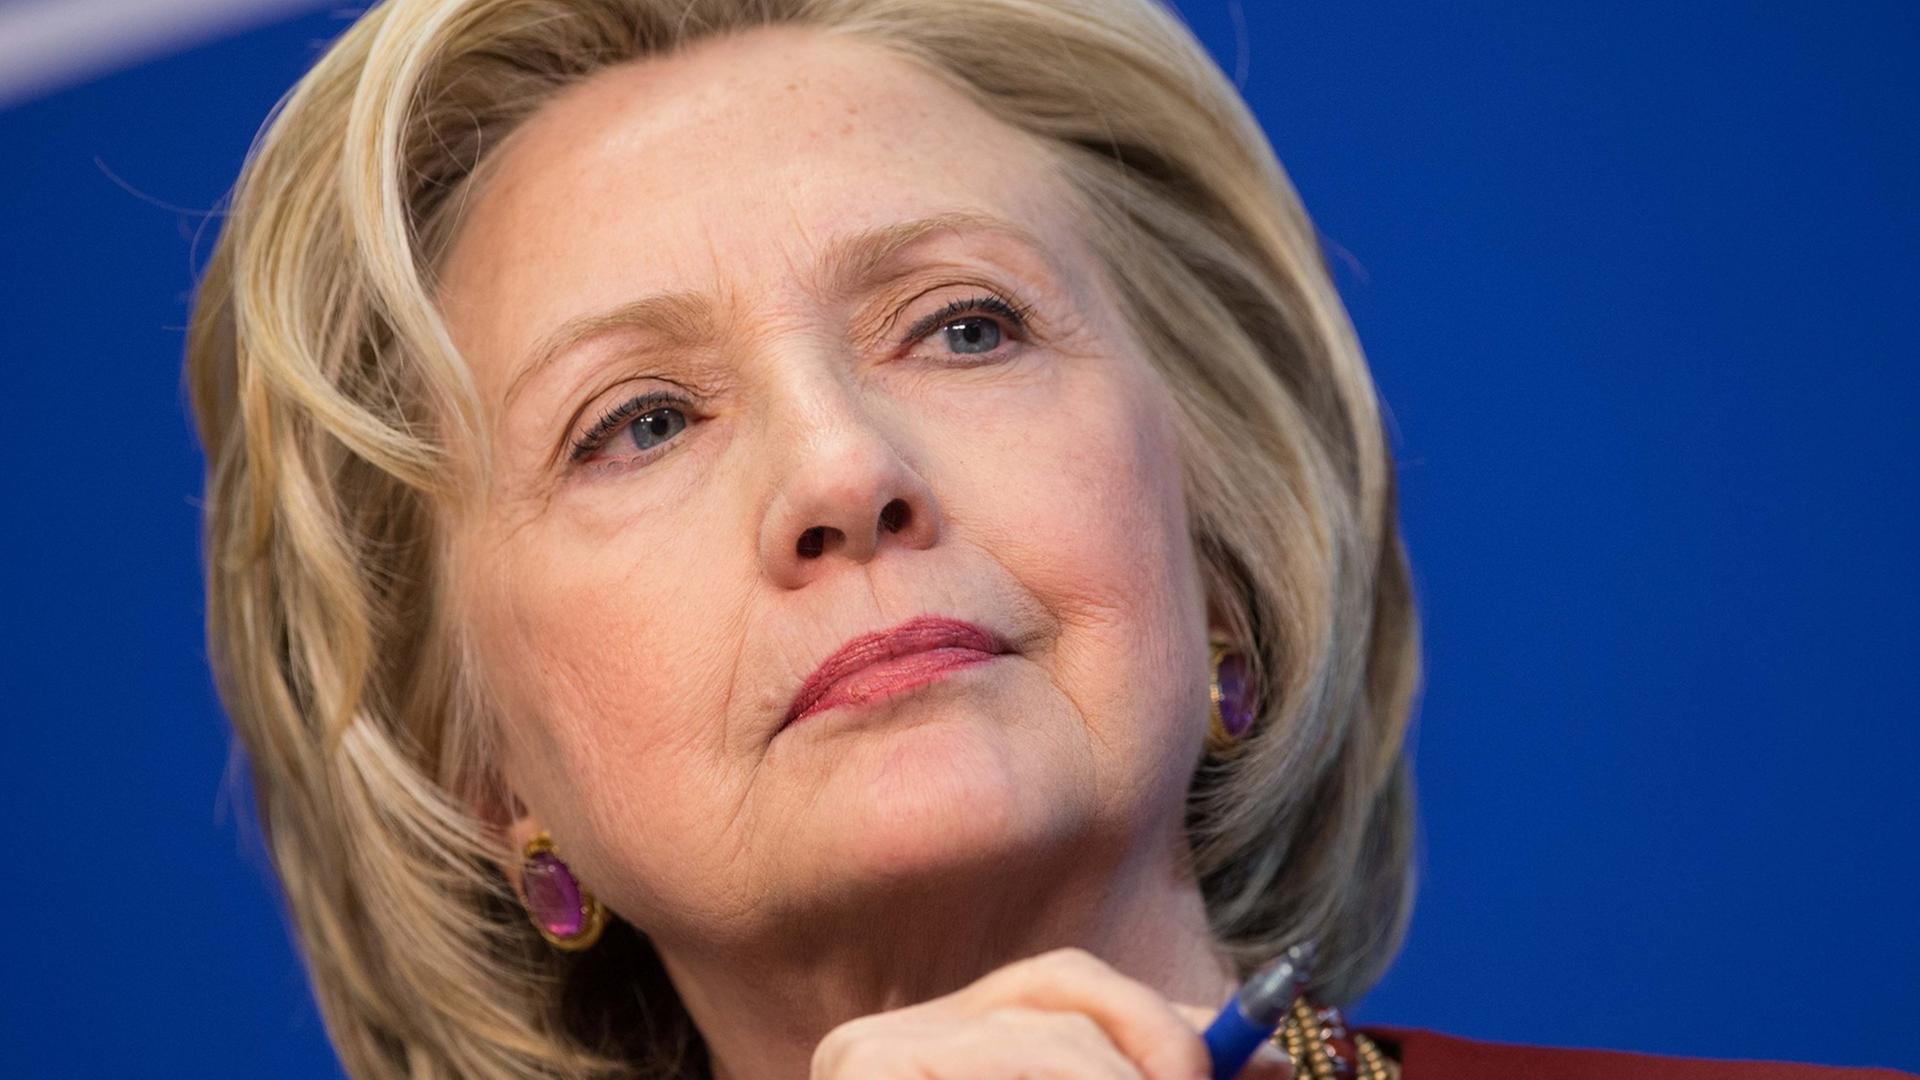 Hillary Clinton während ihrer Teilnahme bei einer Diskussionsveranstaltung im März 2015